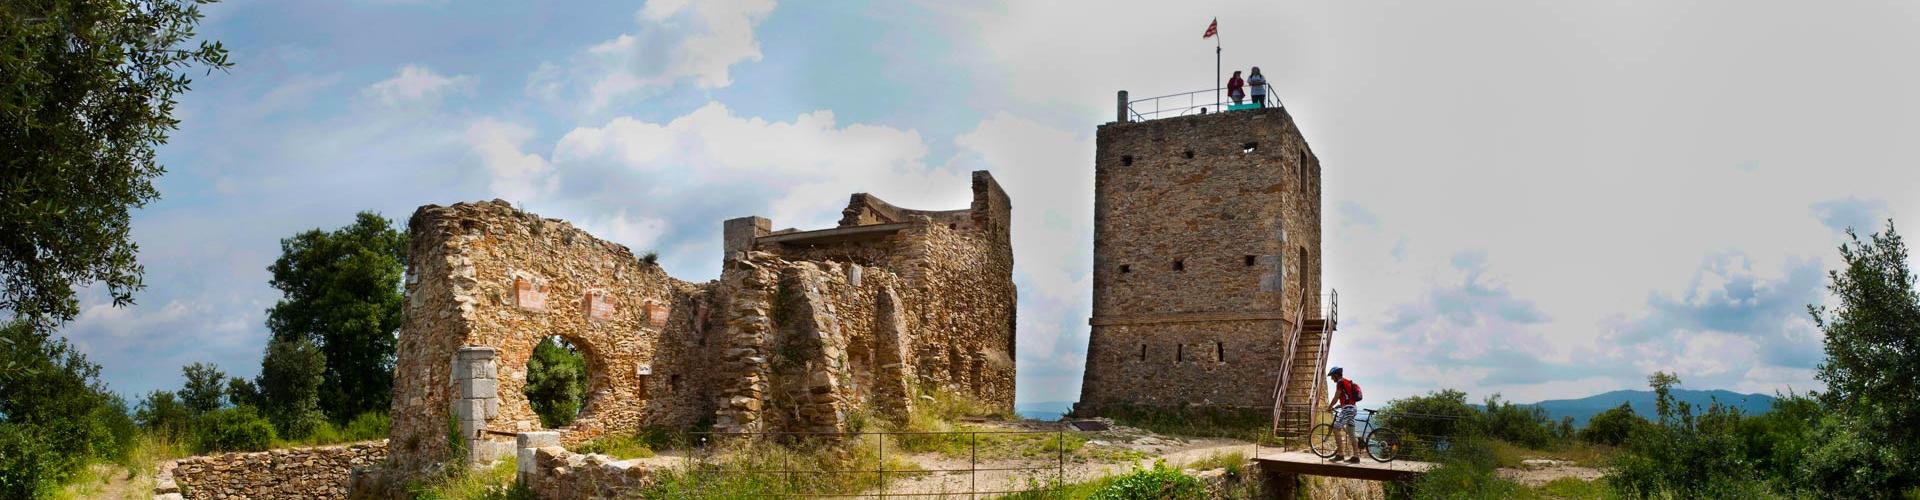 Castell de Sant Miquel, foto: JS.Carrera